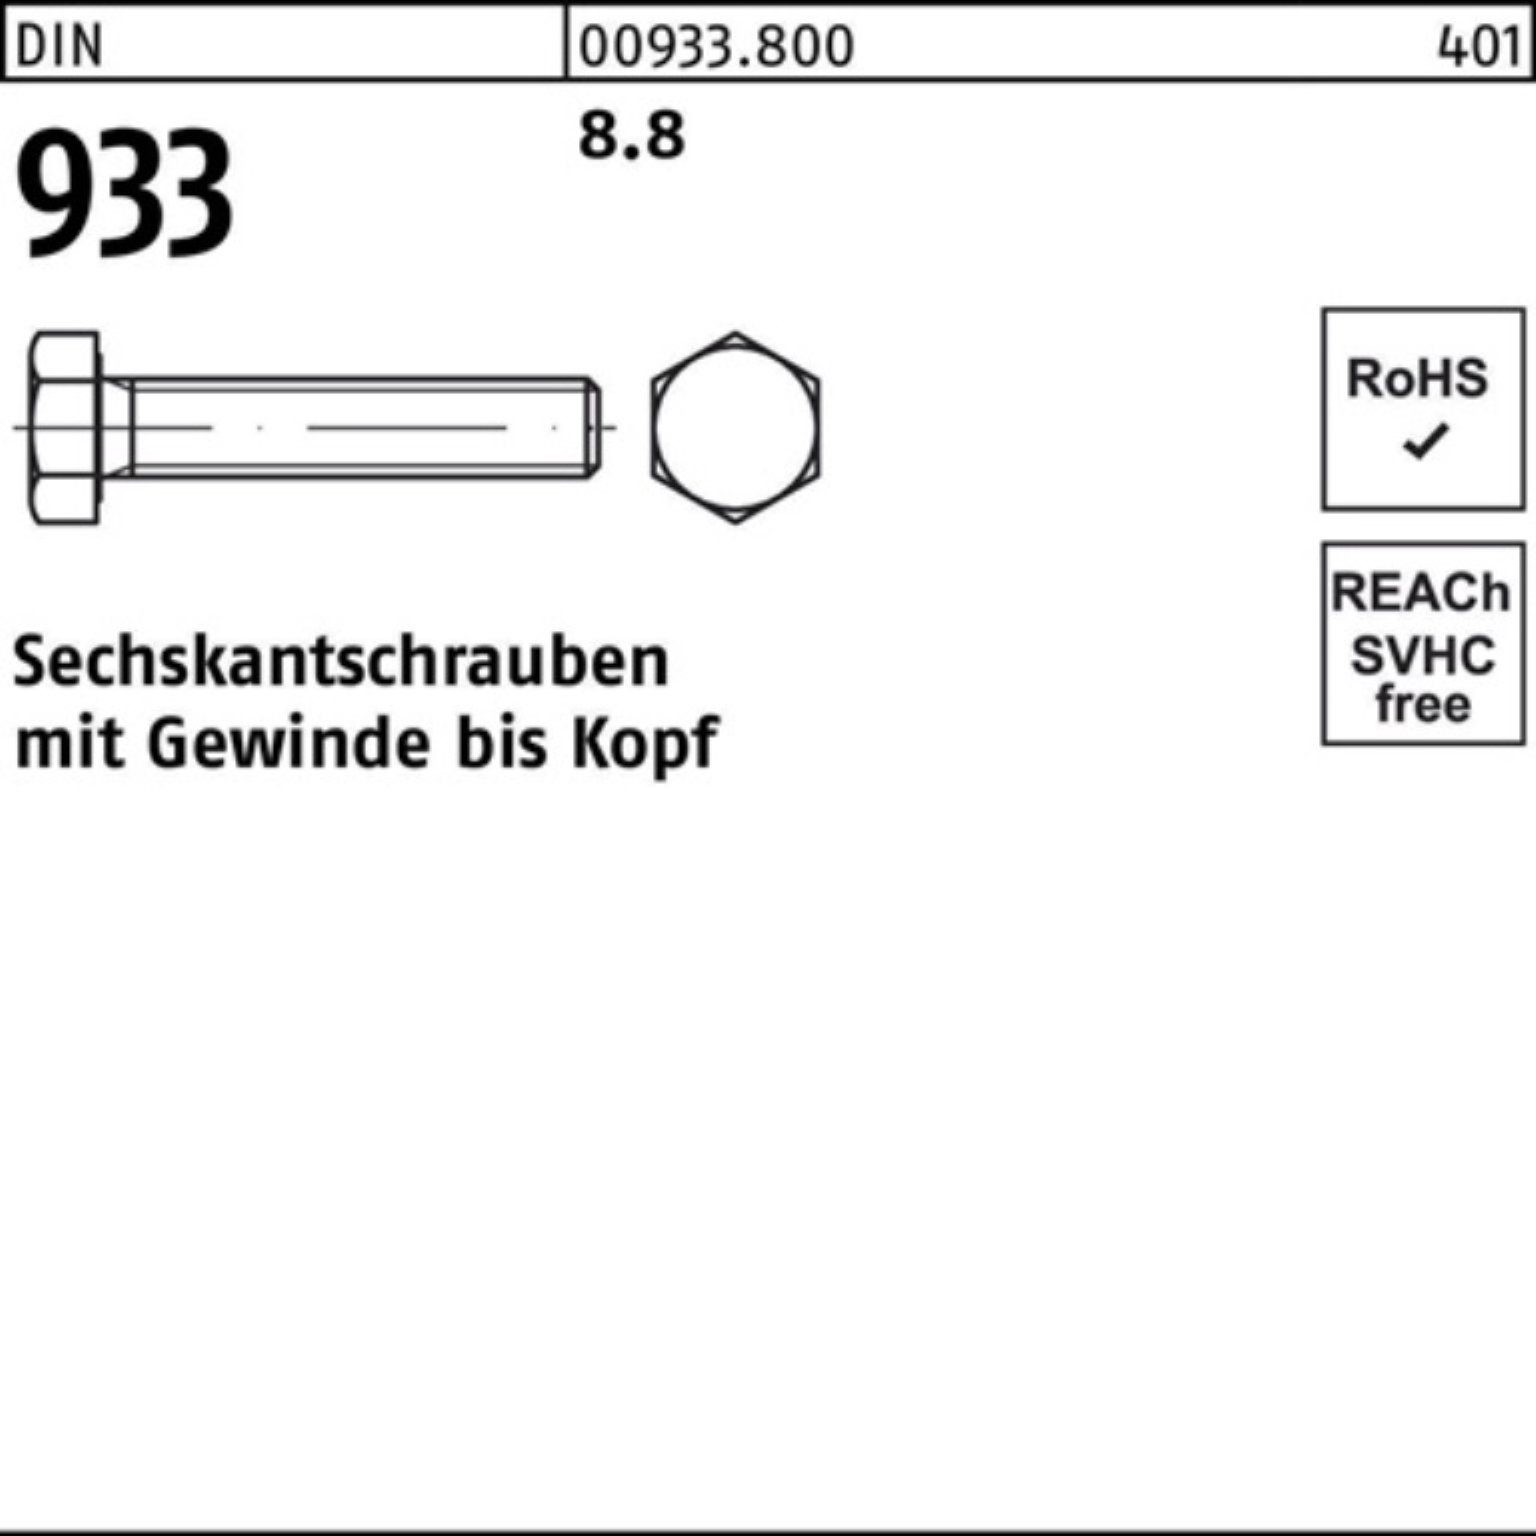 Reyher Sechskantschraube 90 25 933 Pack 933 VG 8.8 DIN M22x DIN Sechskantschraube 100er Stück